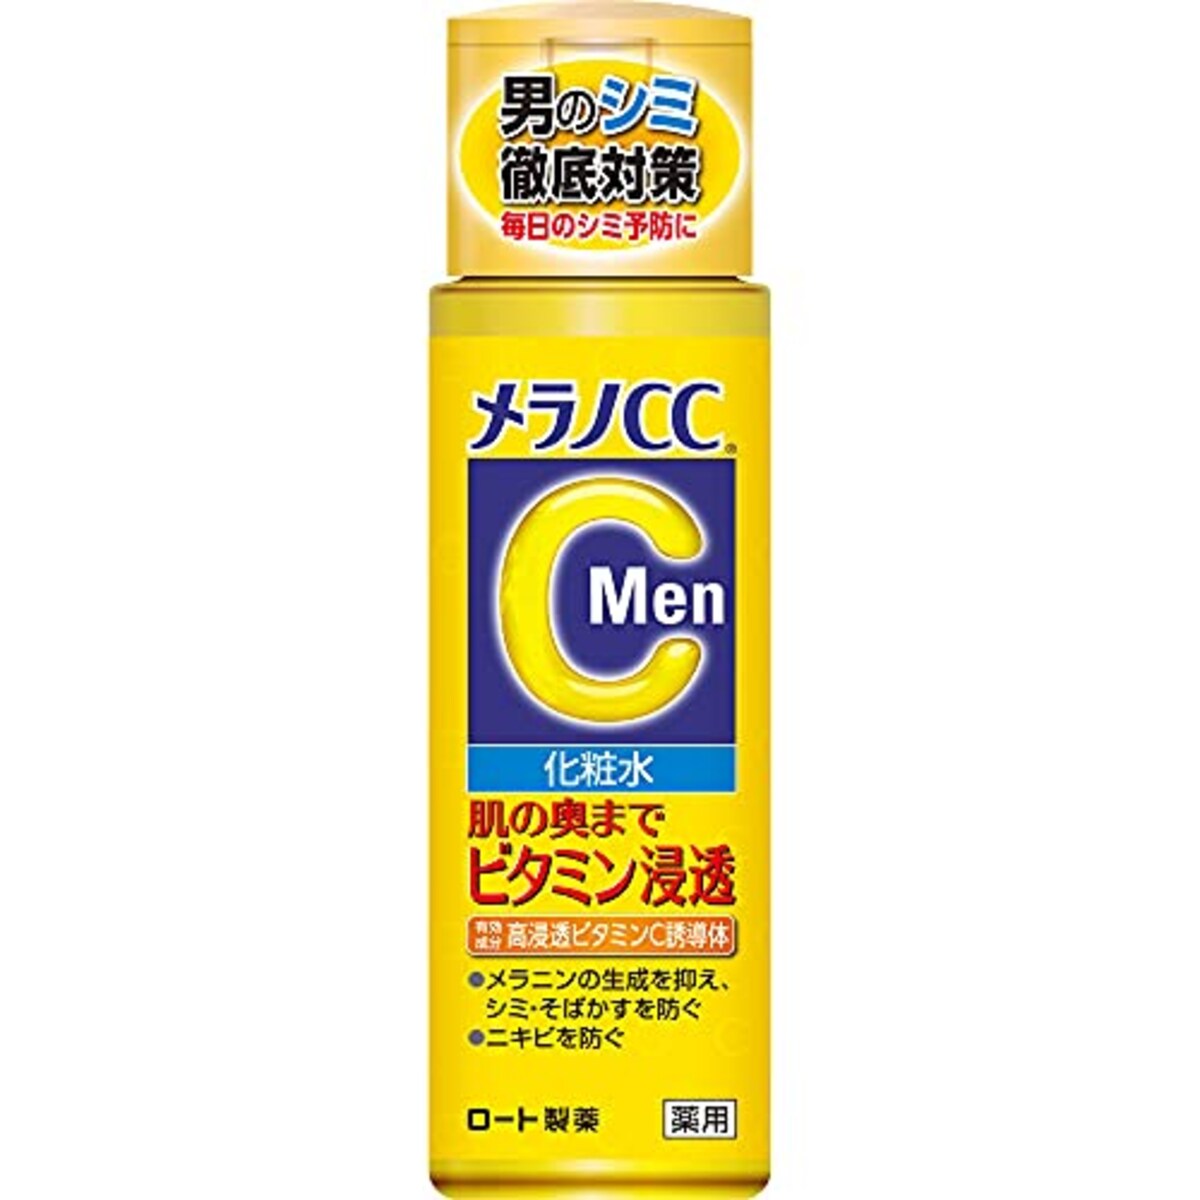 メラノCC MEN 薬用しみ対策美白化粧水 レモン